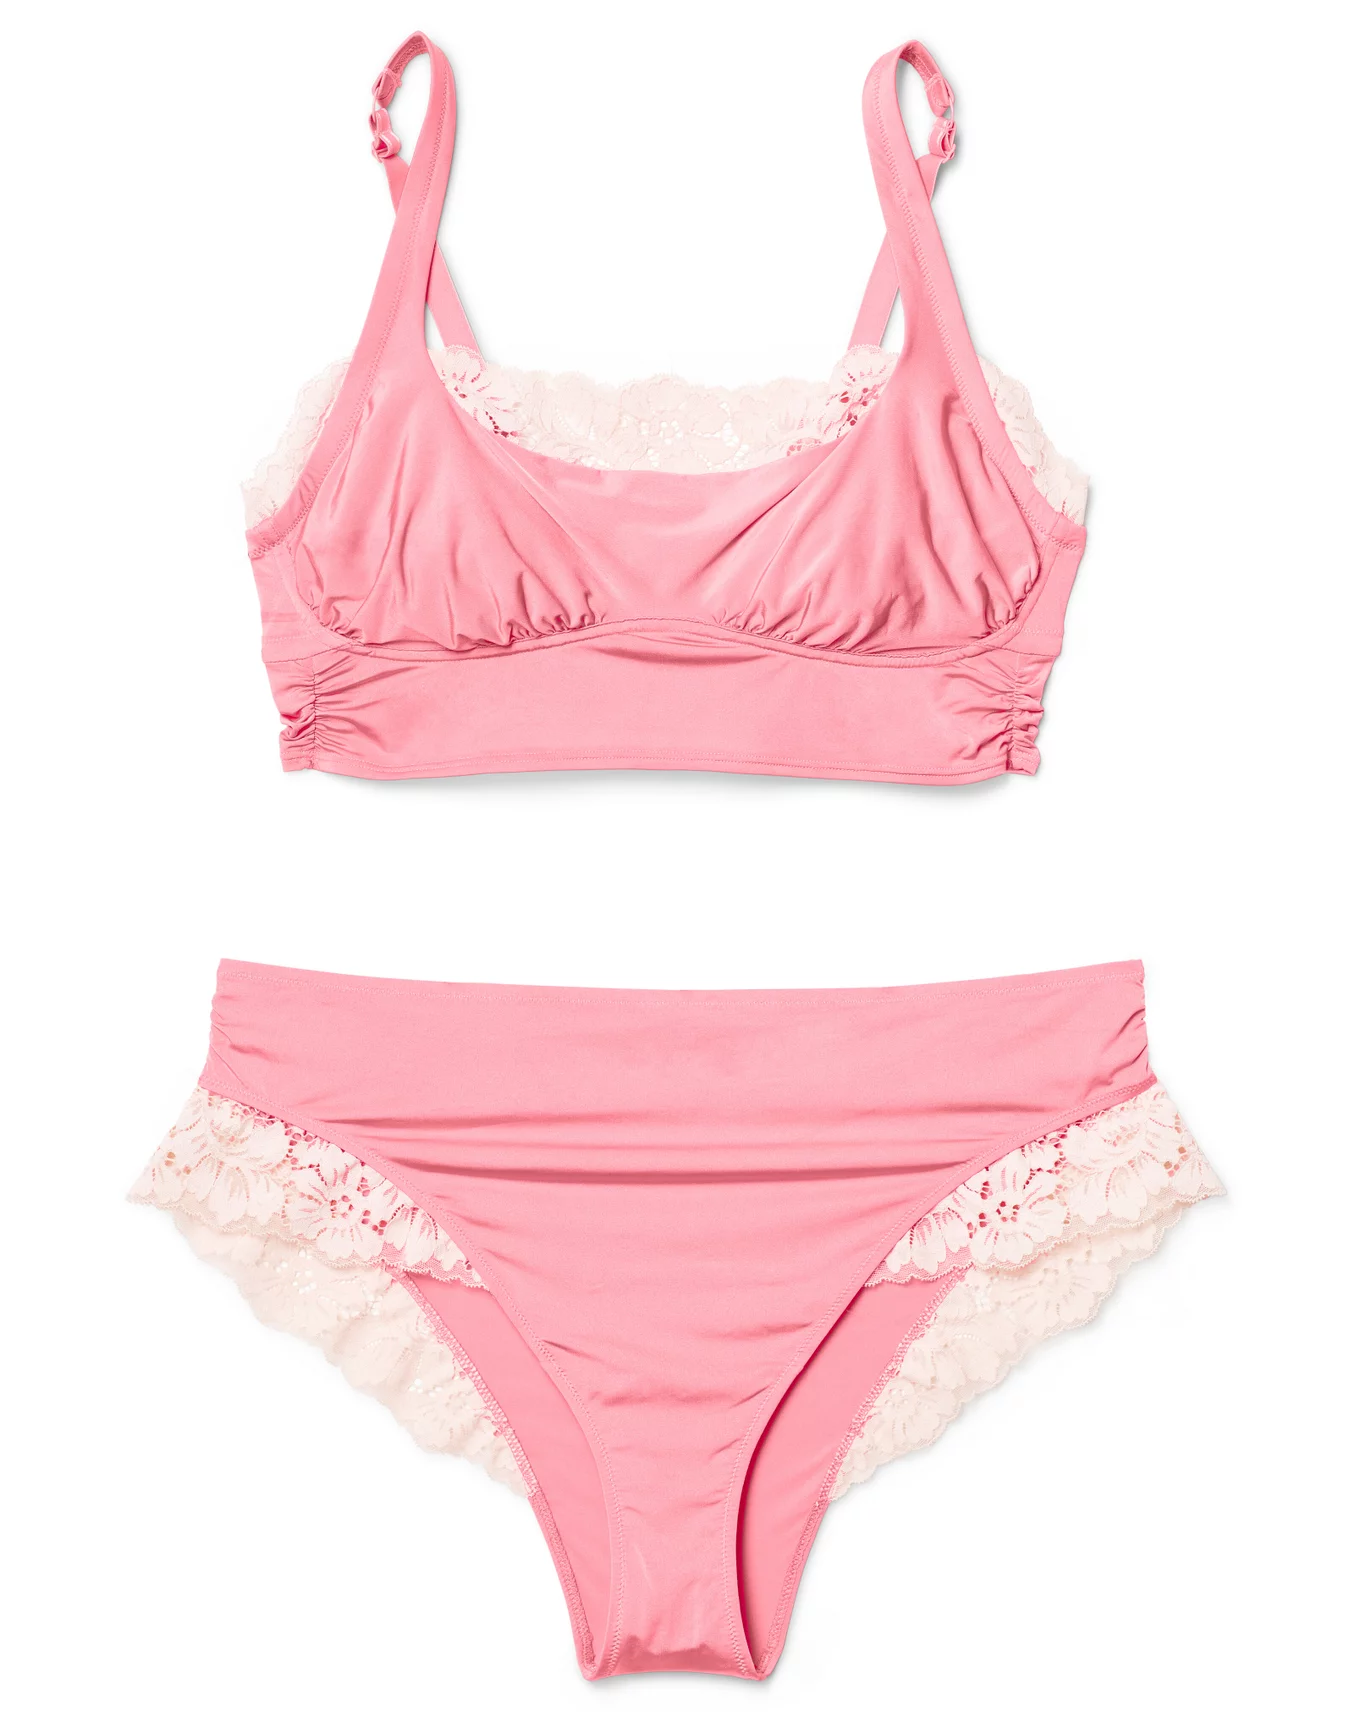 Buy White Boob Underwear Pink Underwear Bridesmaid Gift Idea